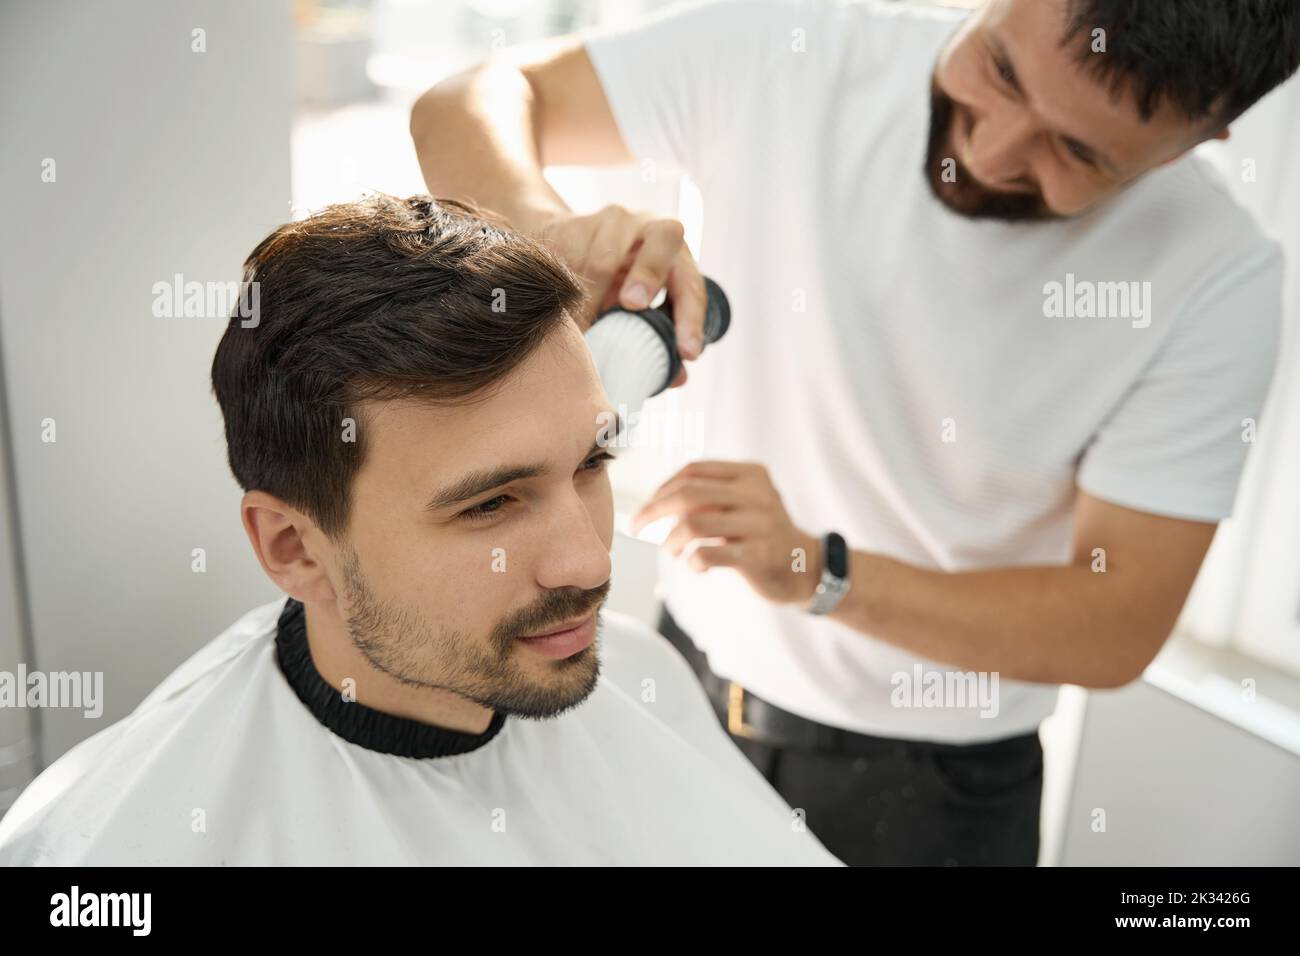 Cheerful hairstyle specialista spazzolare il viso dell'ospite dopo il taglio dei capelli Foto Stock